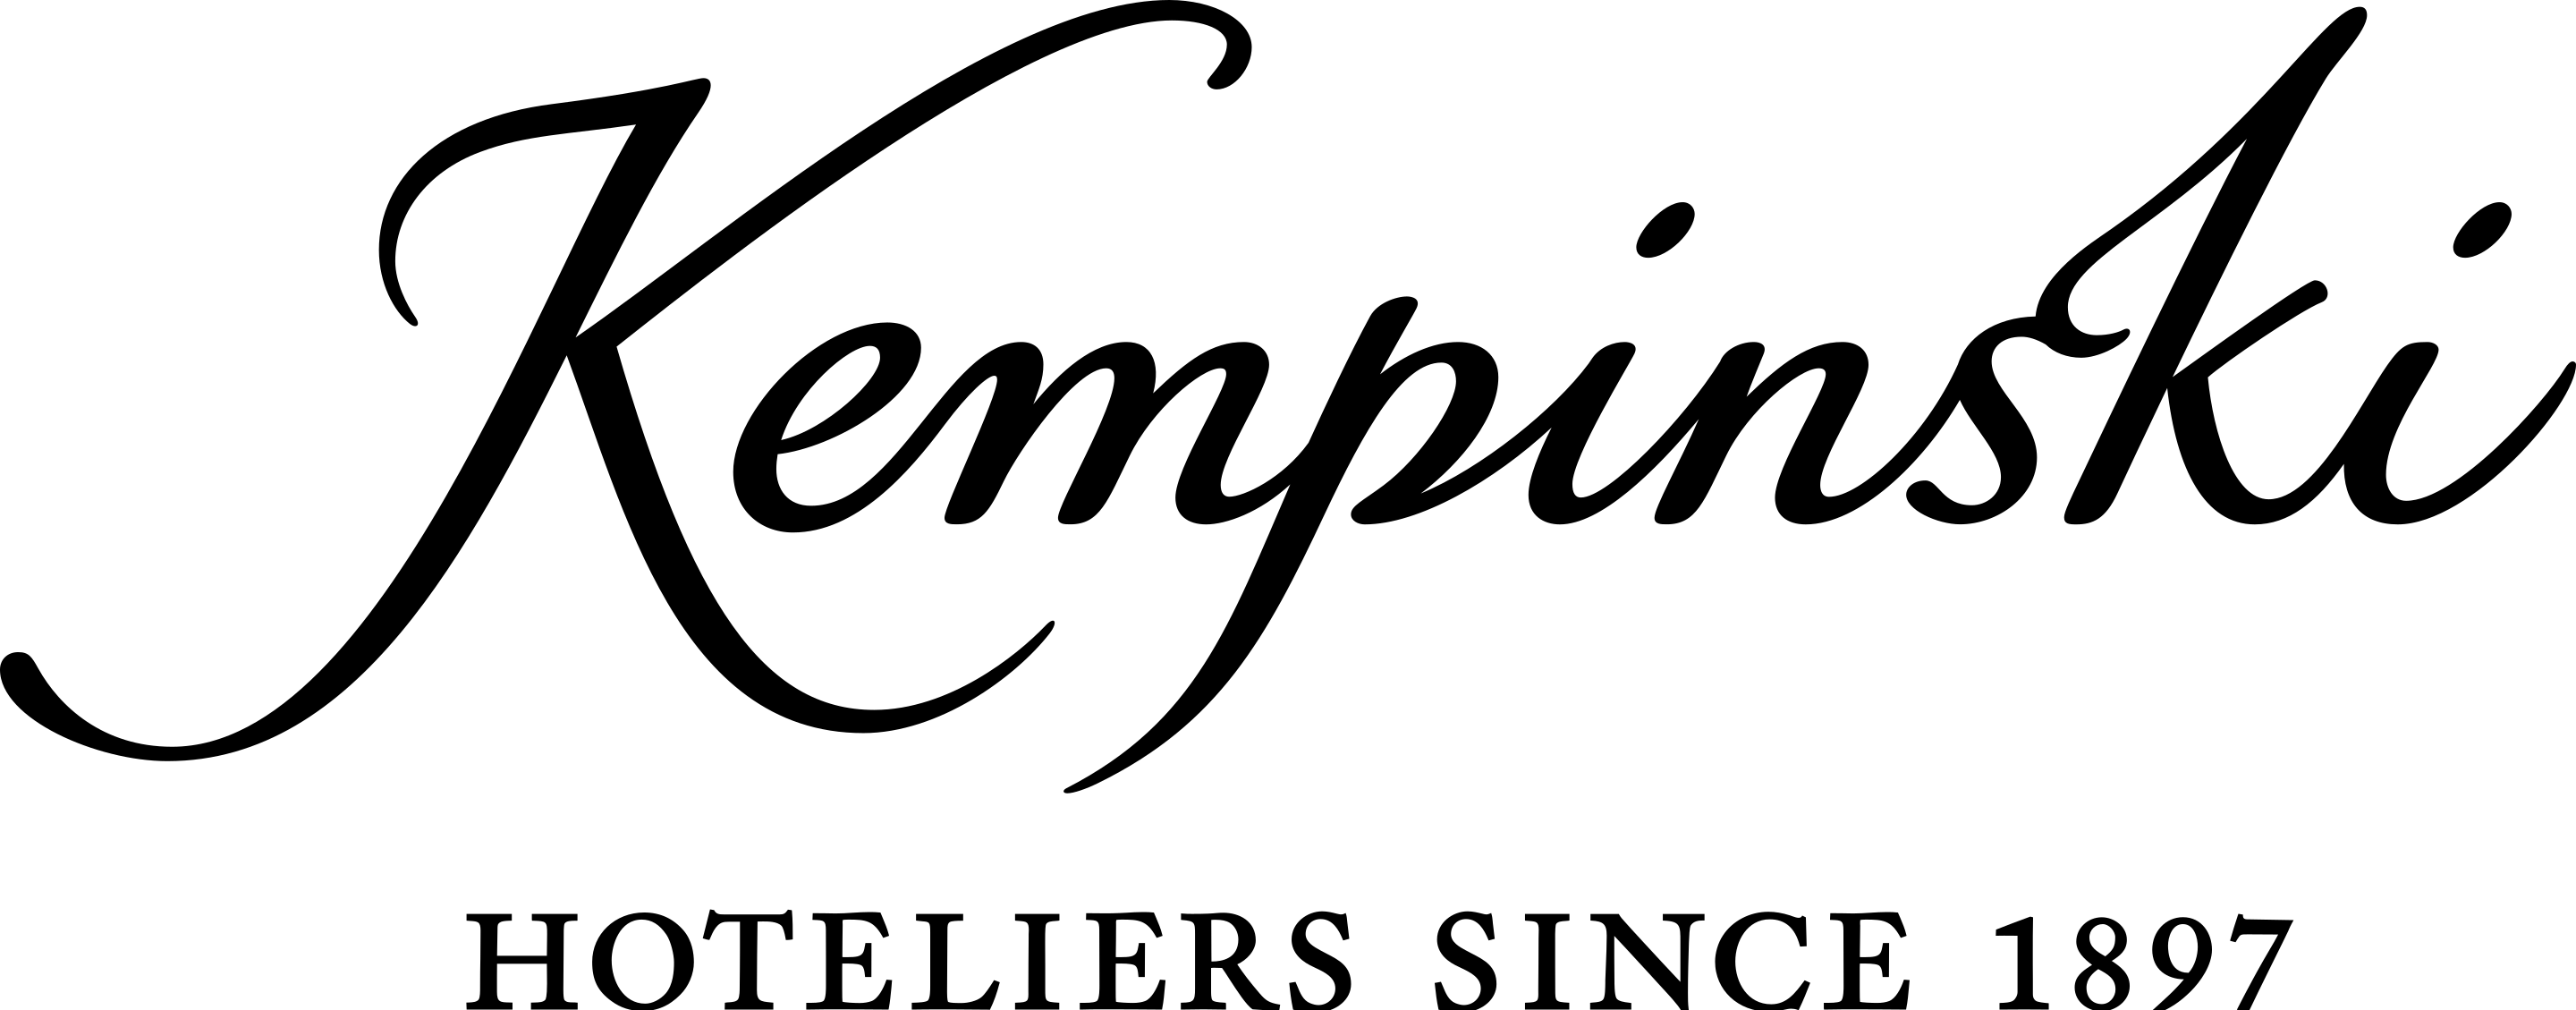 2880px-Kempinski_Logo_2015